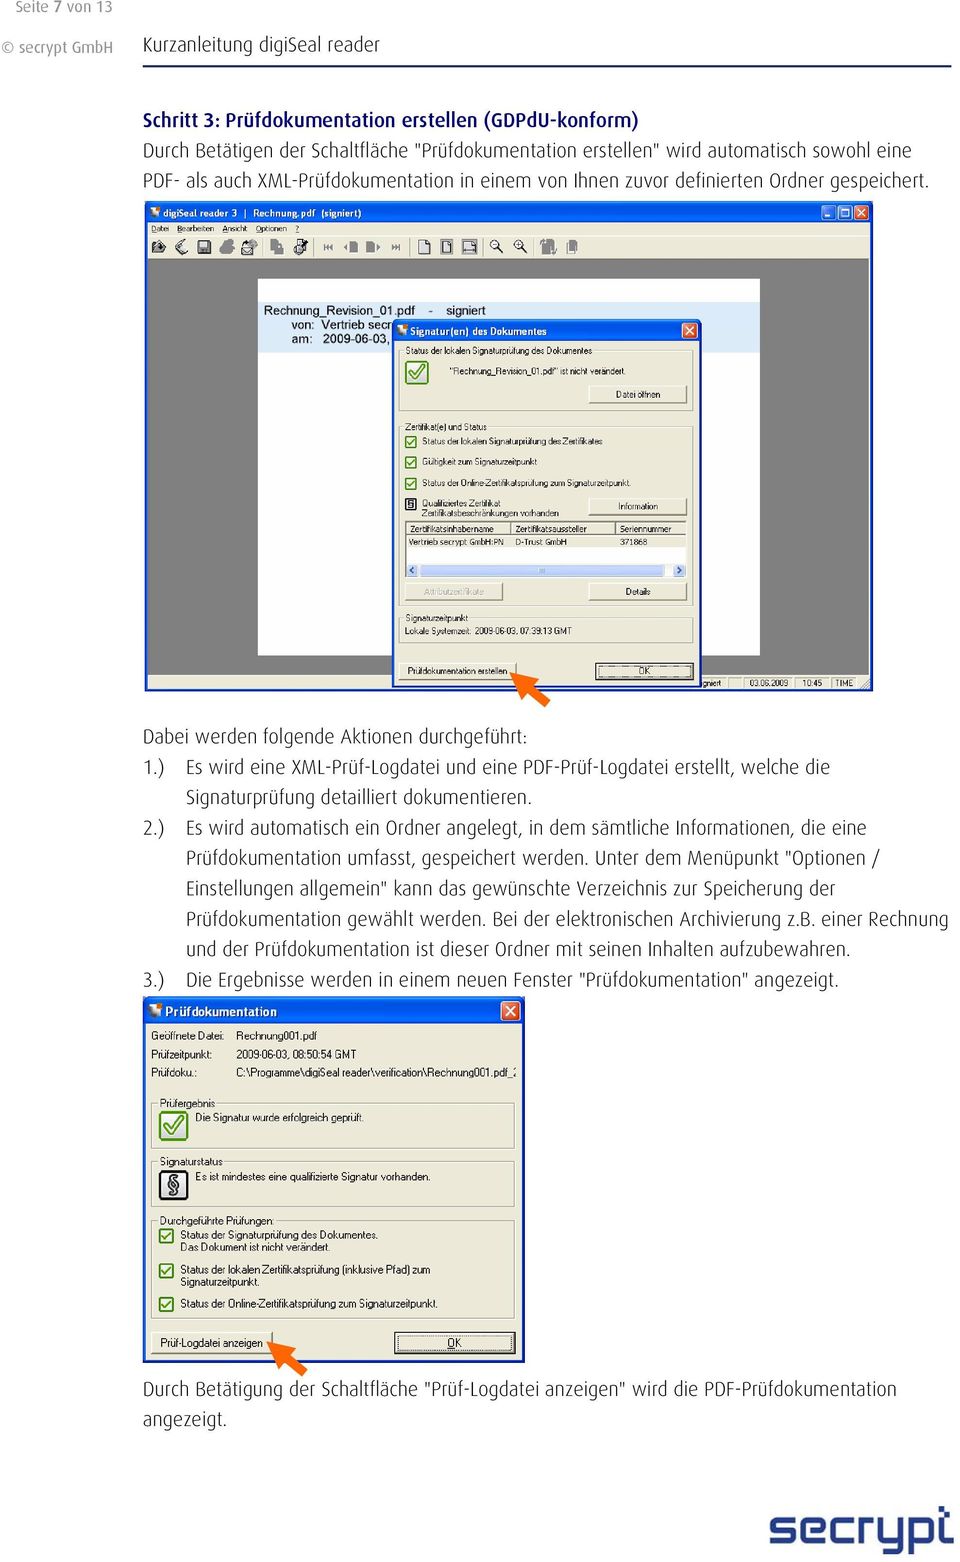 ) Es wird eine XML-Prüf-Logdatei und eine PDF-Prüf-Logdatei erstellt, welche die Signaturprüfung detailliert dokumentieren. 2.